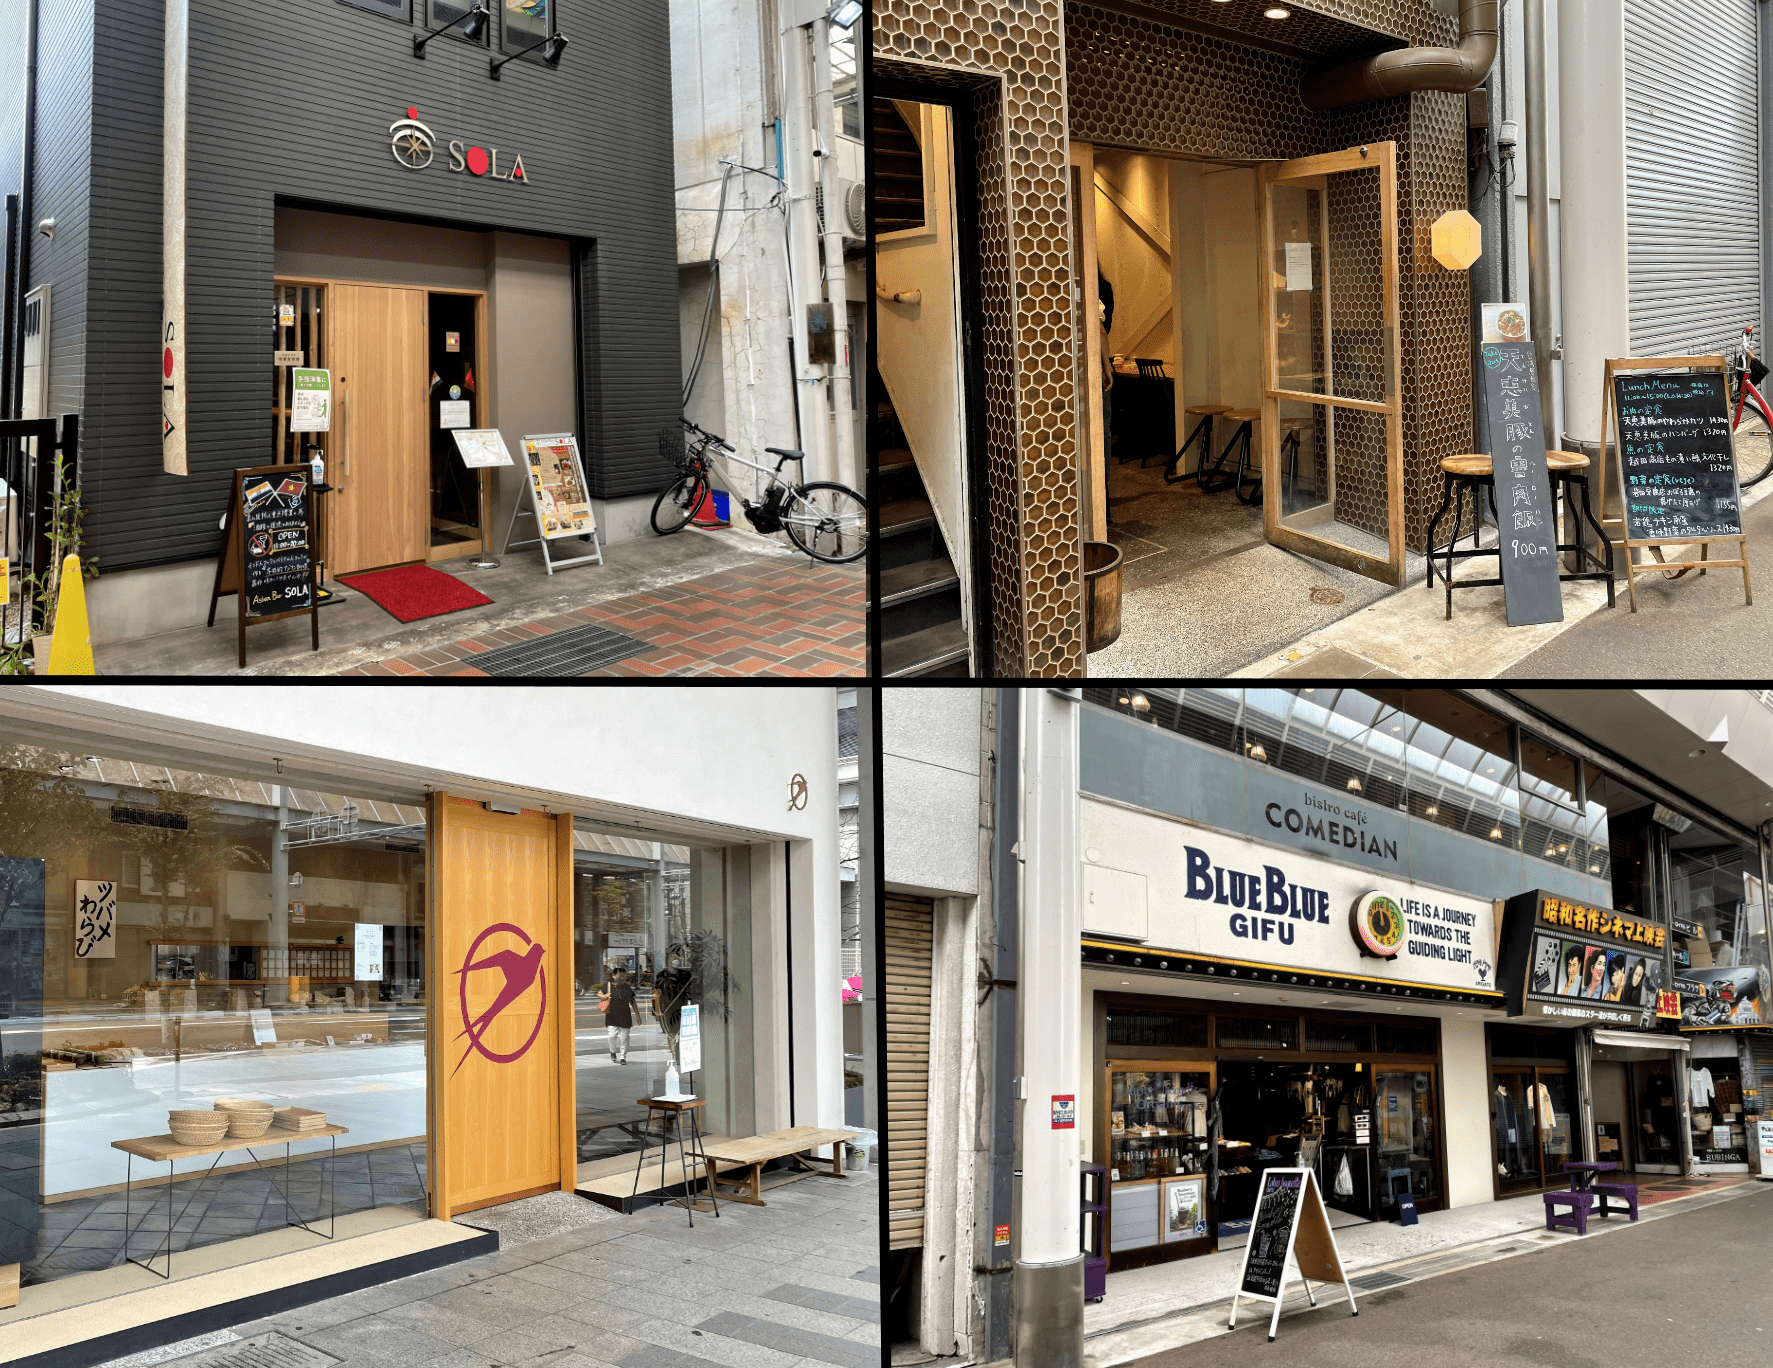 ここ数年で新しい店舗が続々と増え、柳ケ瀬商店街は新旧入り混じる面白いスポットとして注目度が高い。約20年振りに“柳ケ瀬商店街青年部”も復活したそうだ。